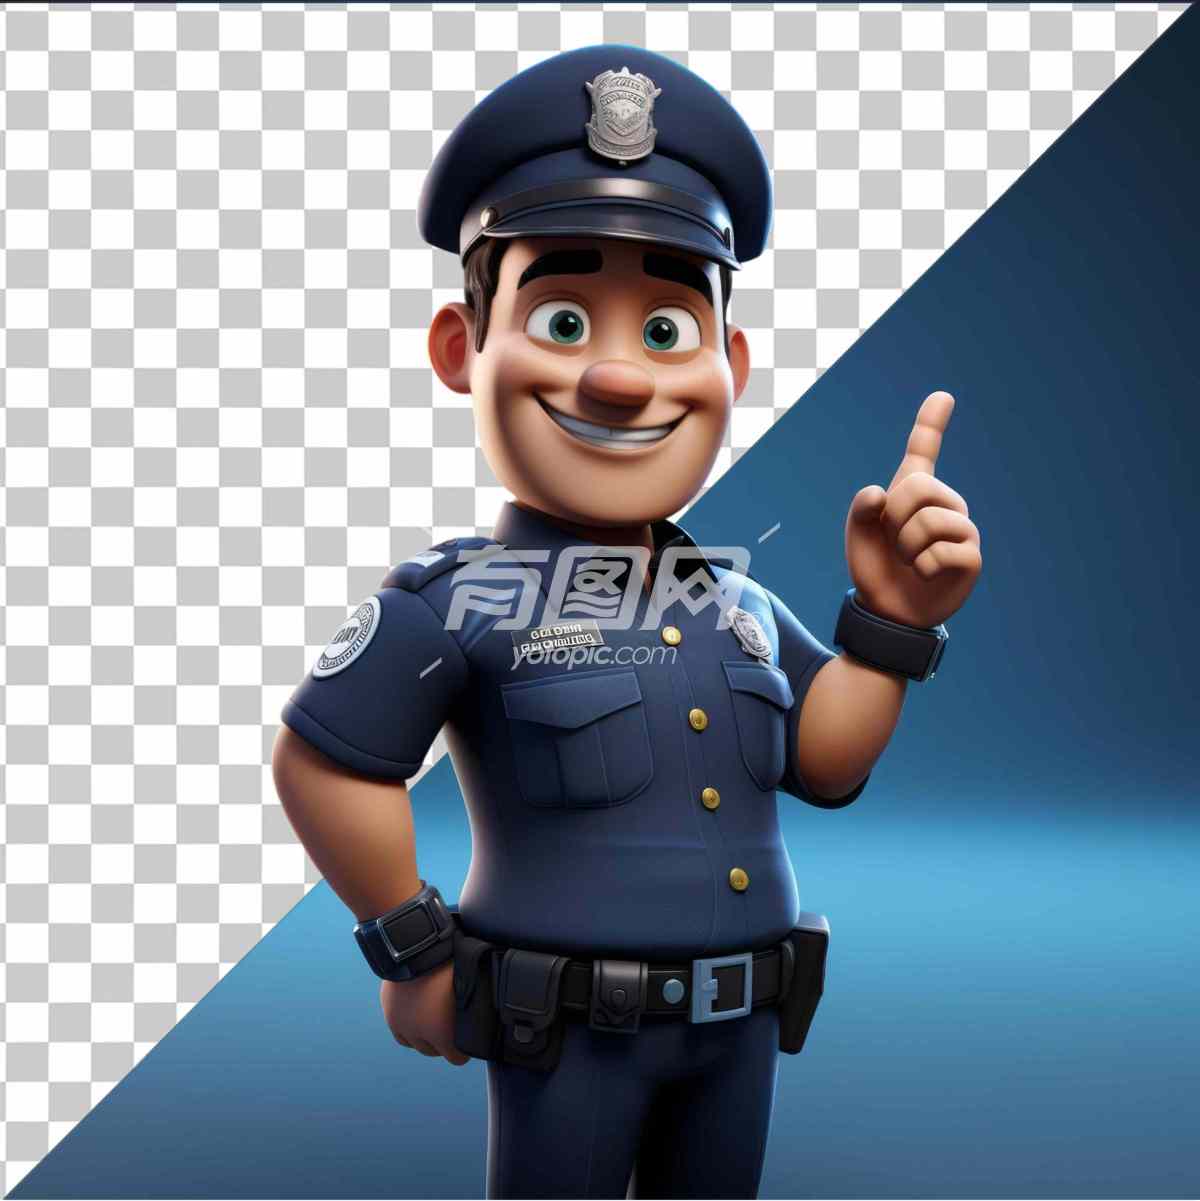 卡通风格的警察角色